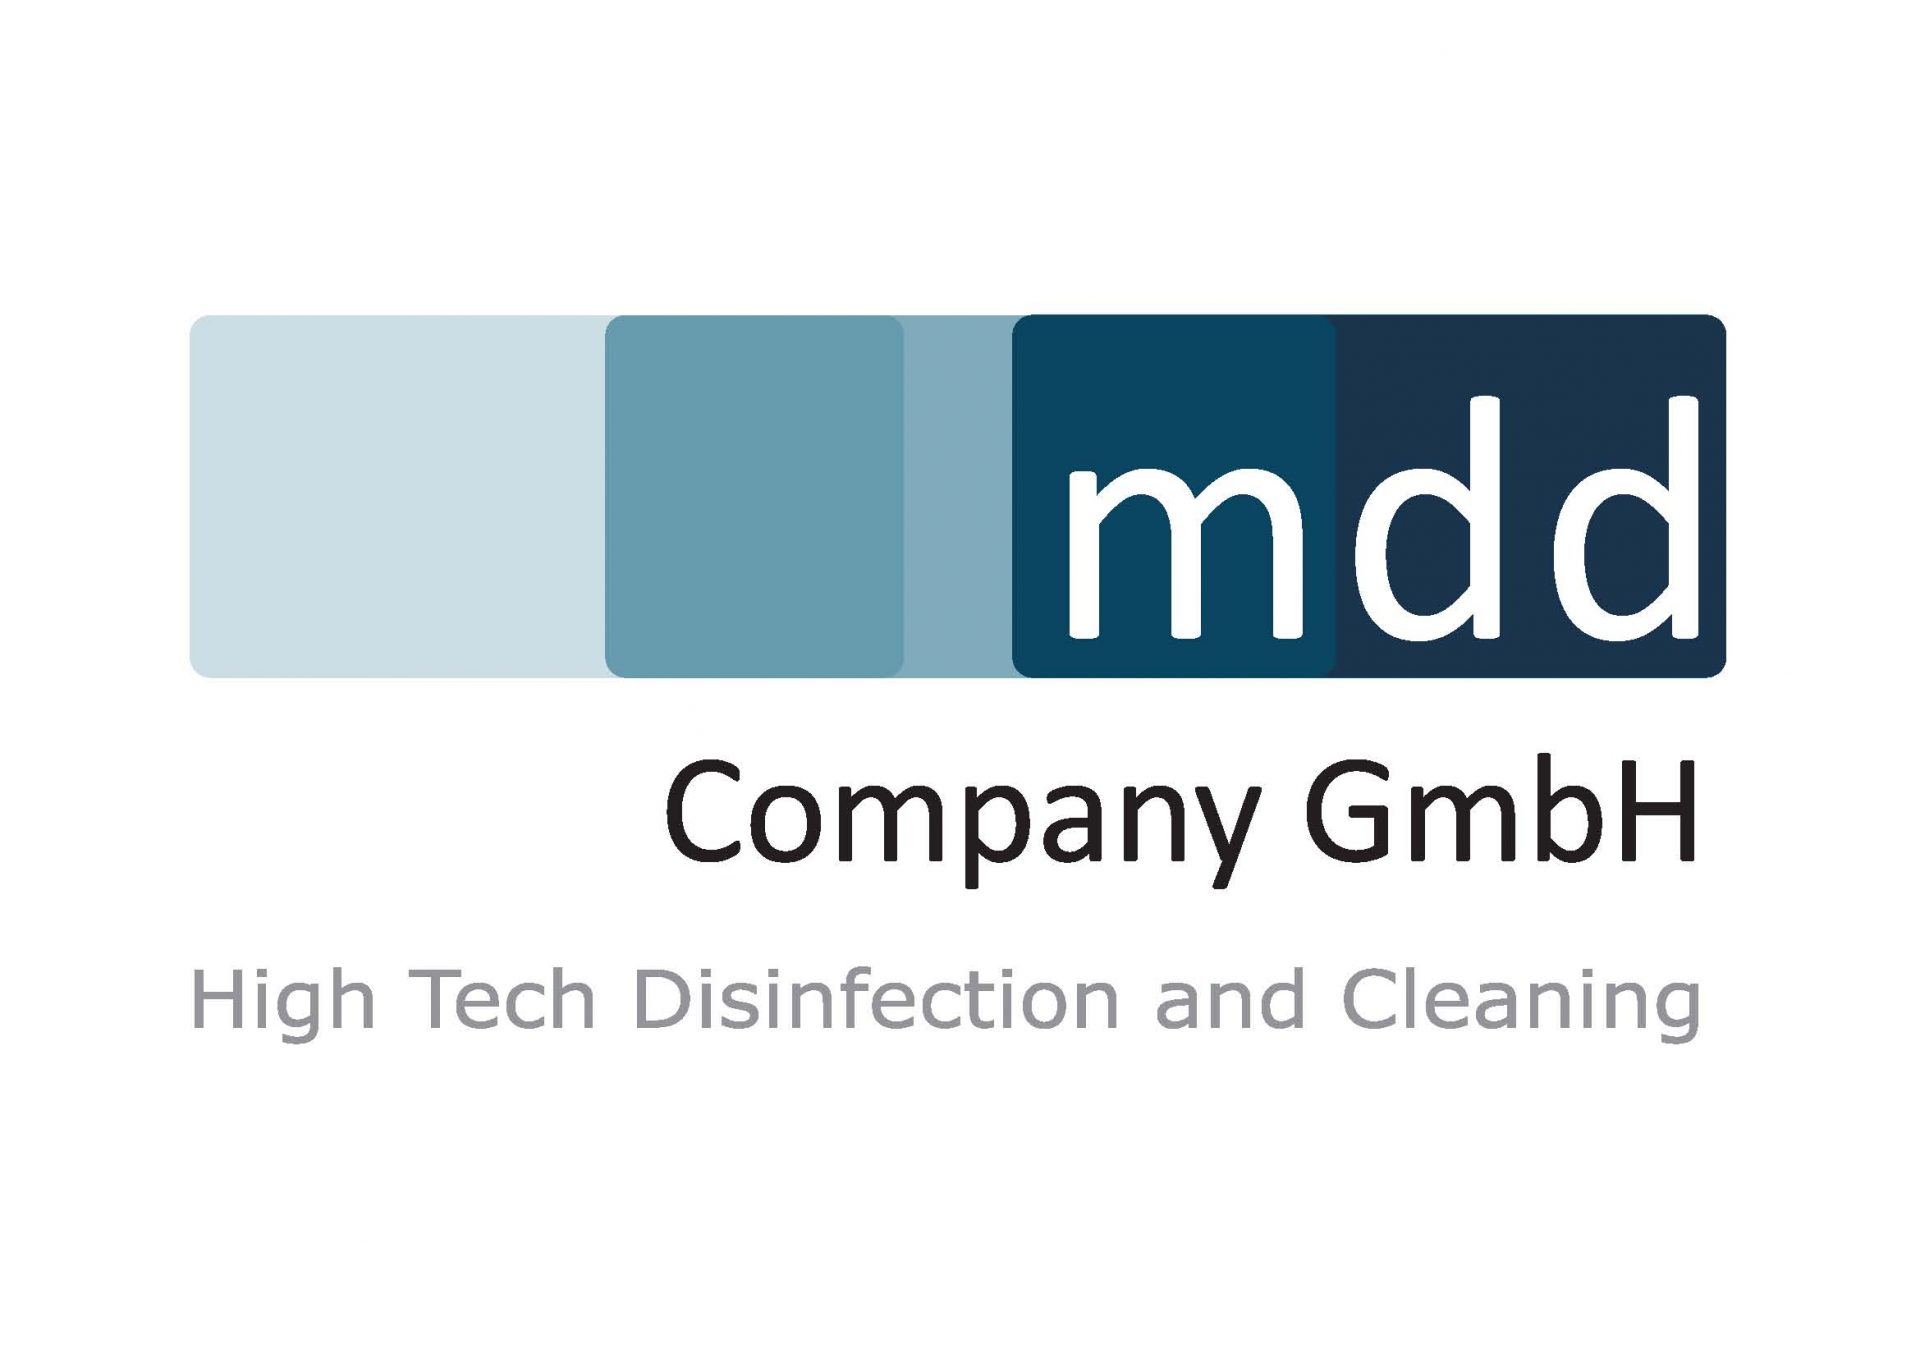 mdd_logo